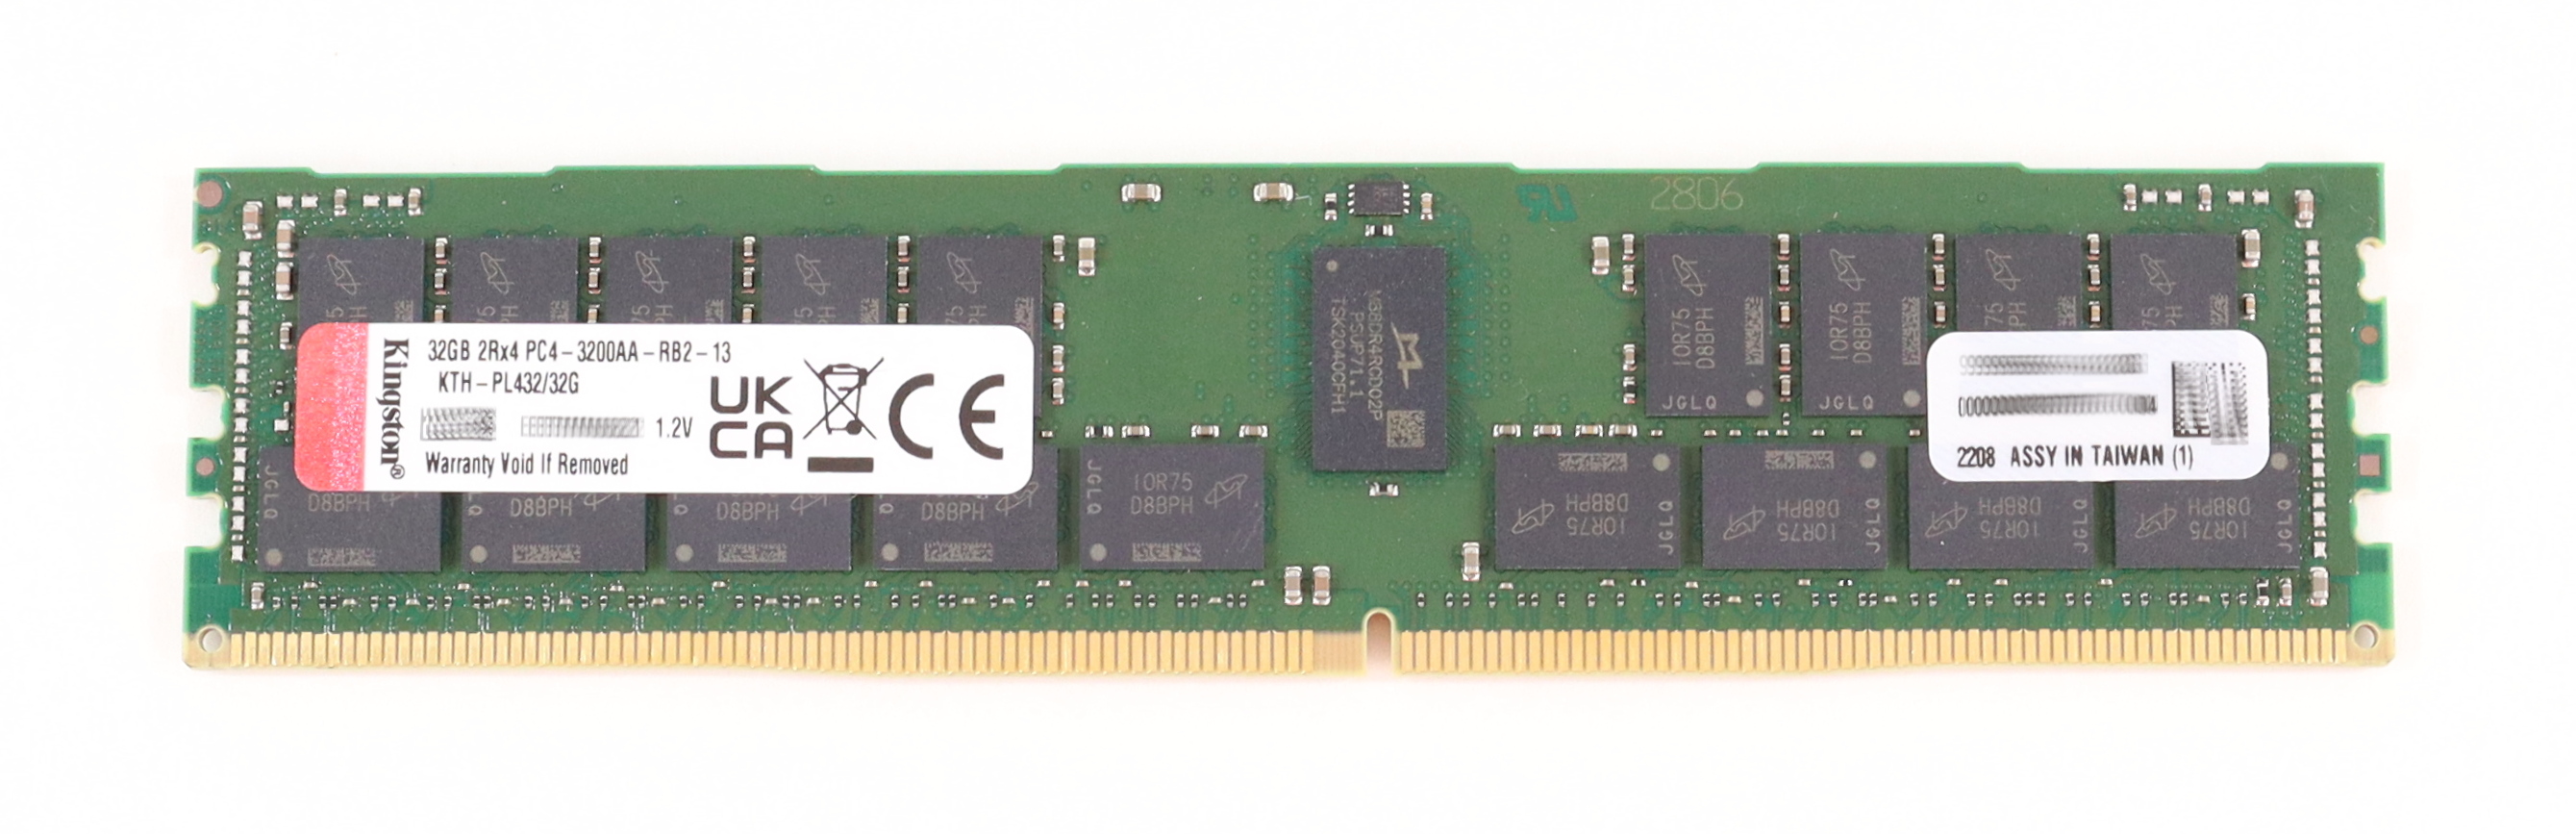 Kingston 32GB KTH-PL432/32G PC4-3200AA DDR4 25600 Dimm 288-pin ECC 1.2V Ref